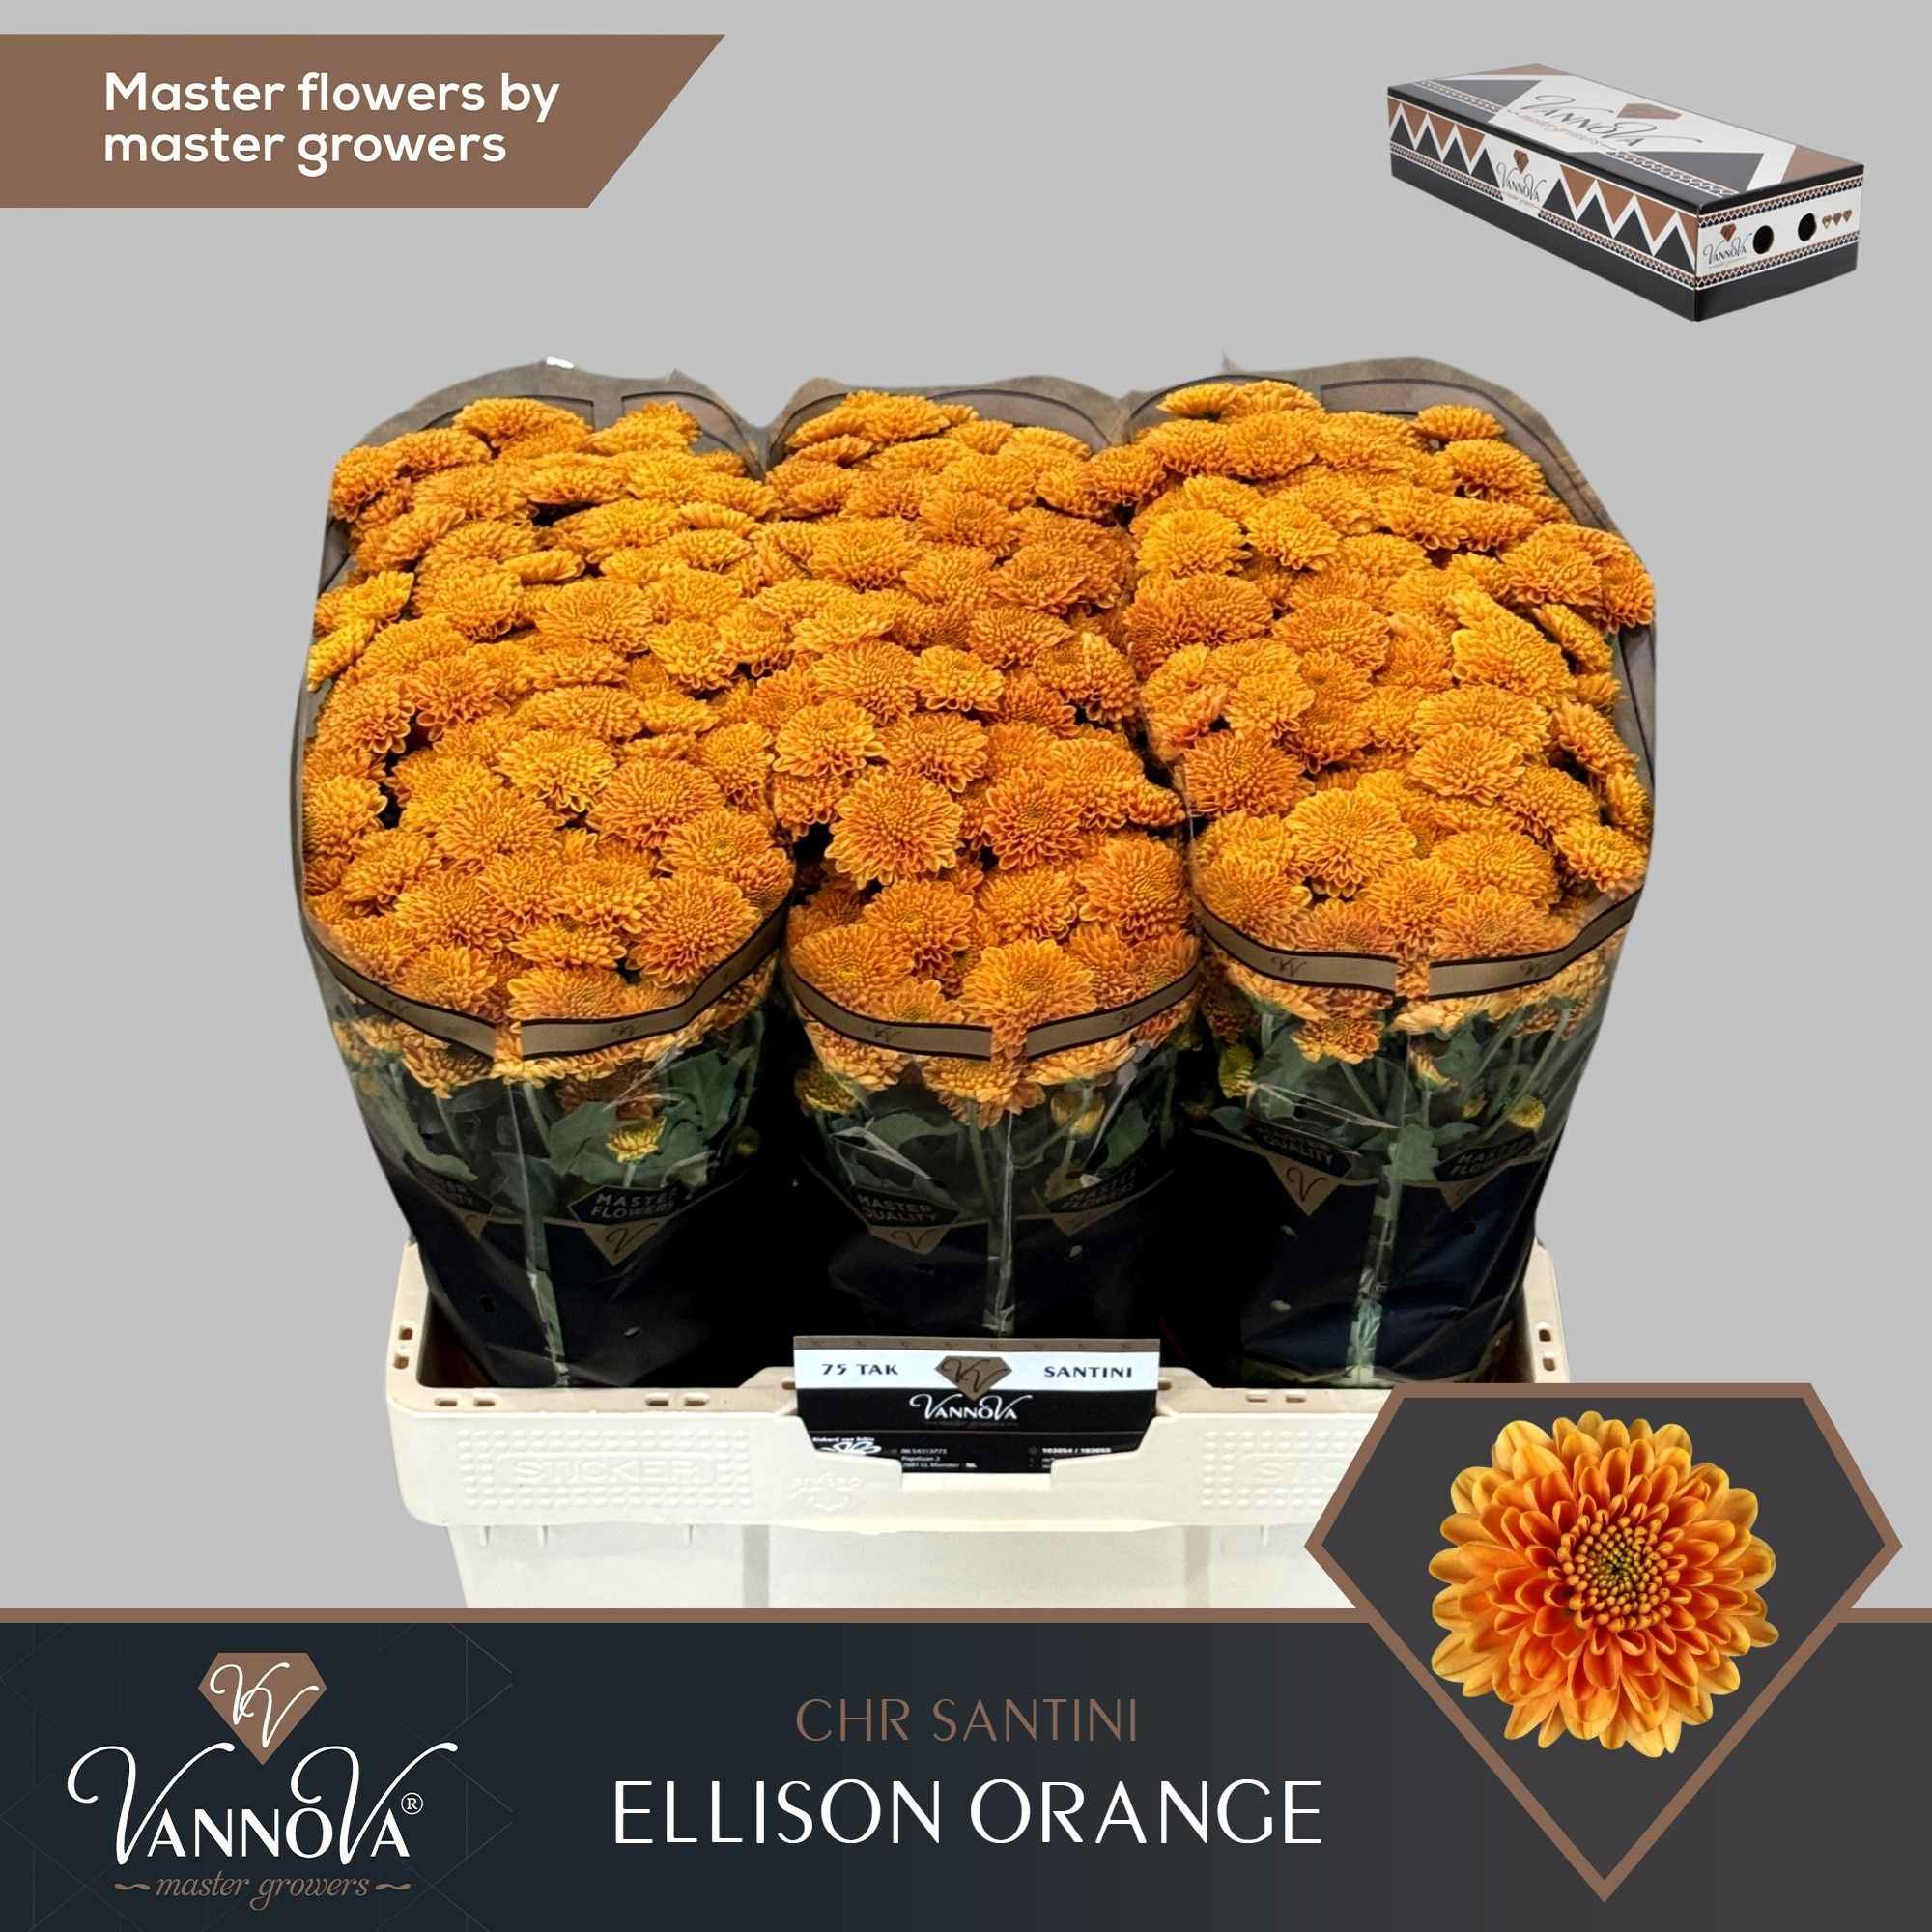 Срезанные цветы оптом Chrys sa ellison orange от 75шт. из Голландии с доставкой по России